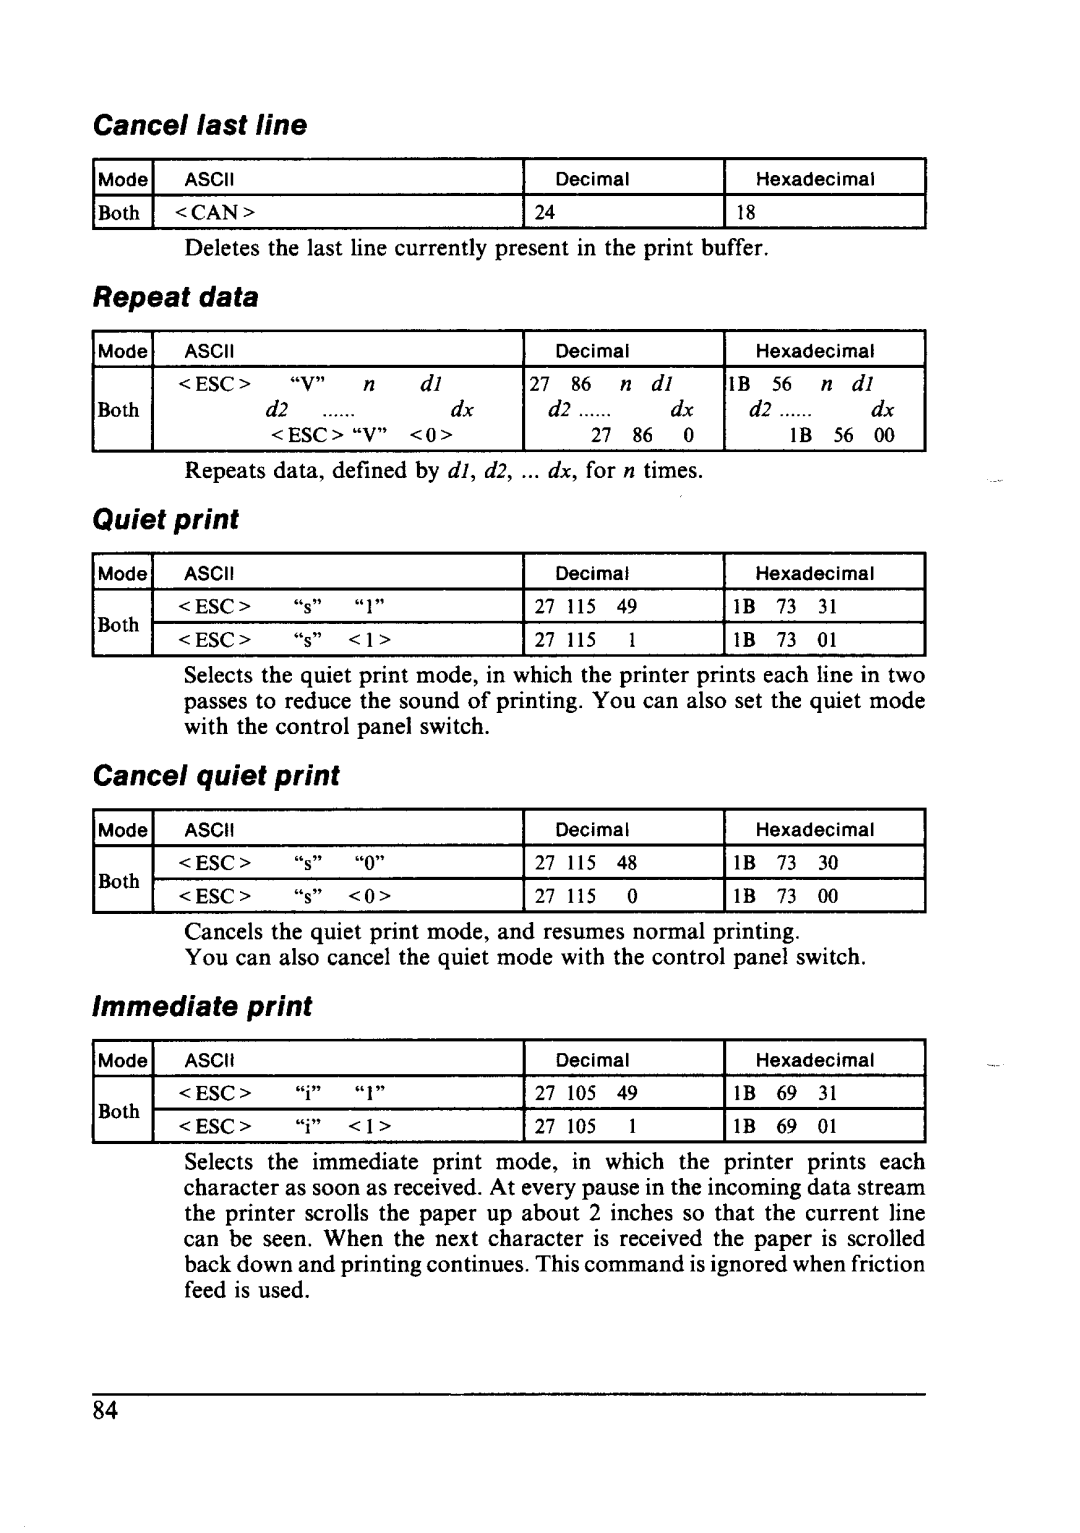 Star Micronics LC24-10 user manual Cancel Last, Repeat data, Cancel Quiet Print, Immediate print 